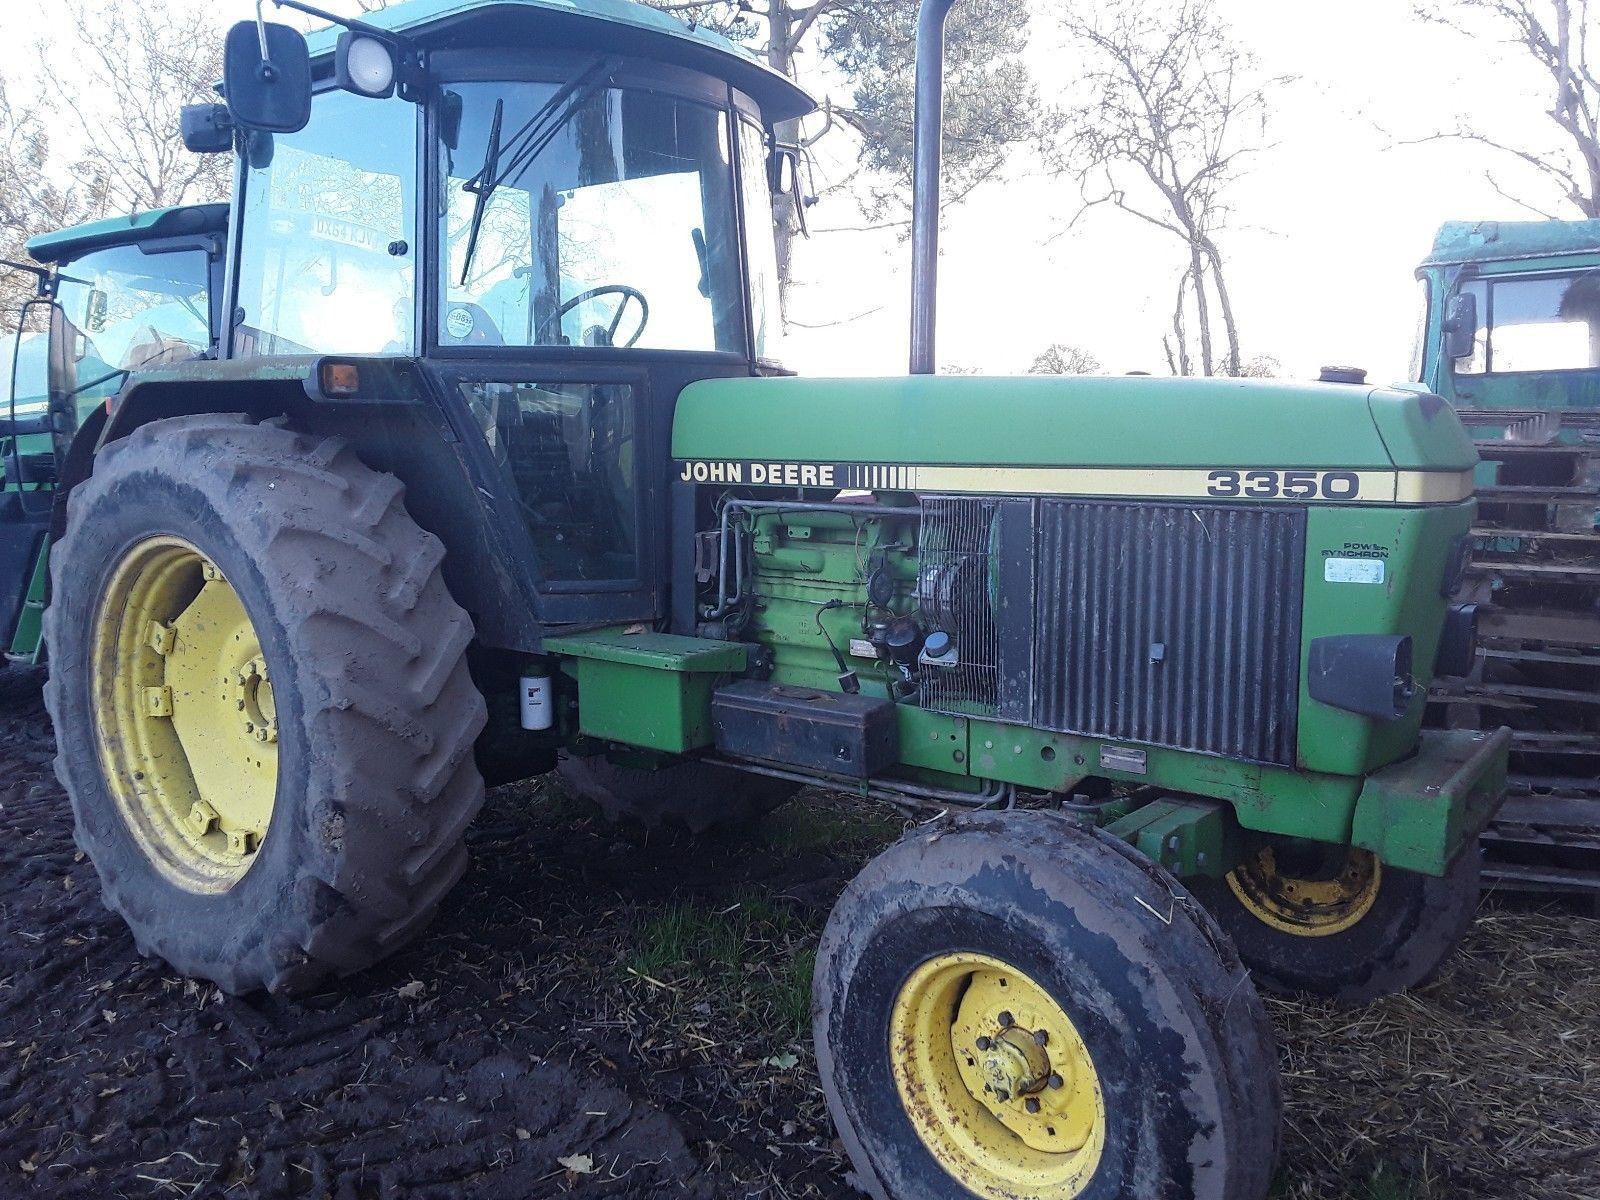 JOHN DEERE 3350 2wd tractor - £850.00